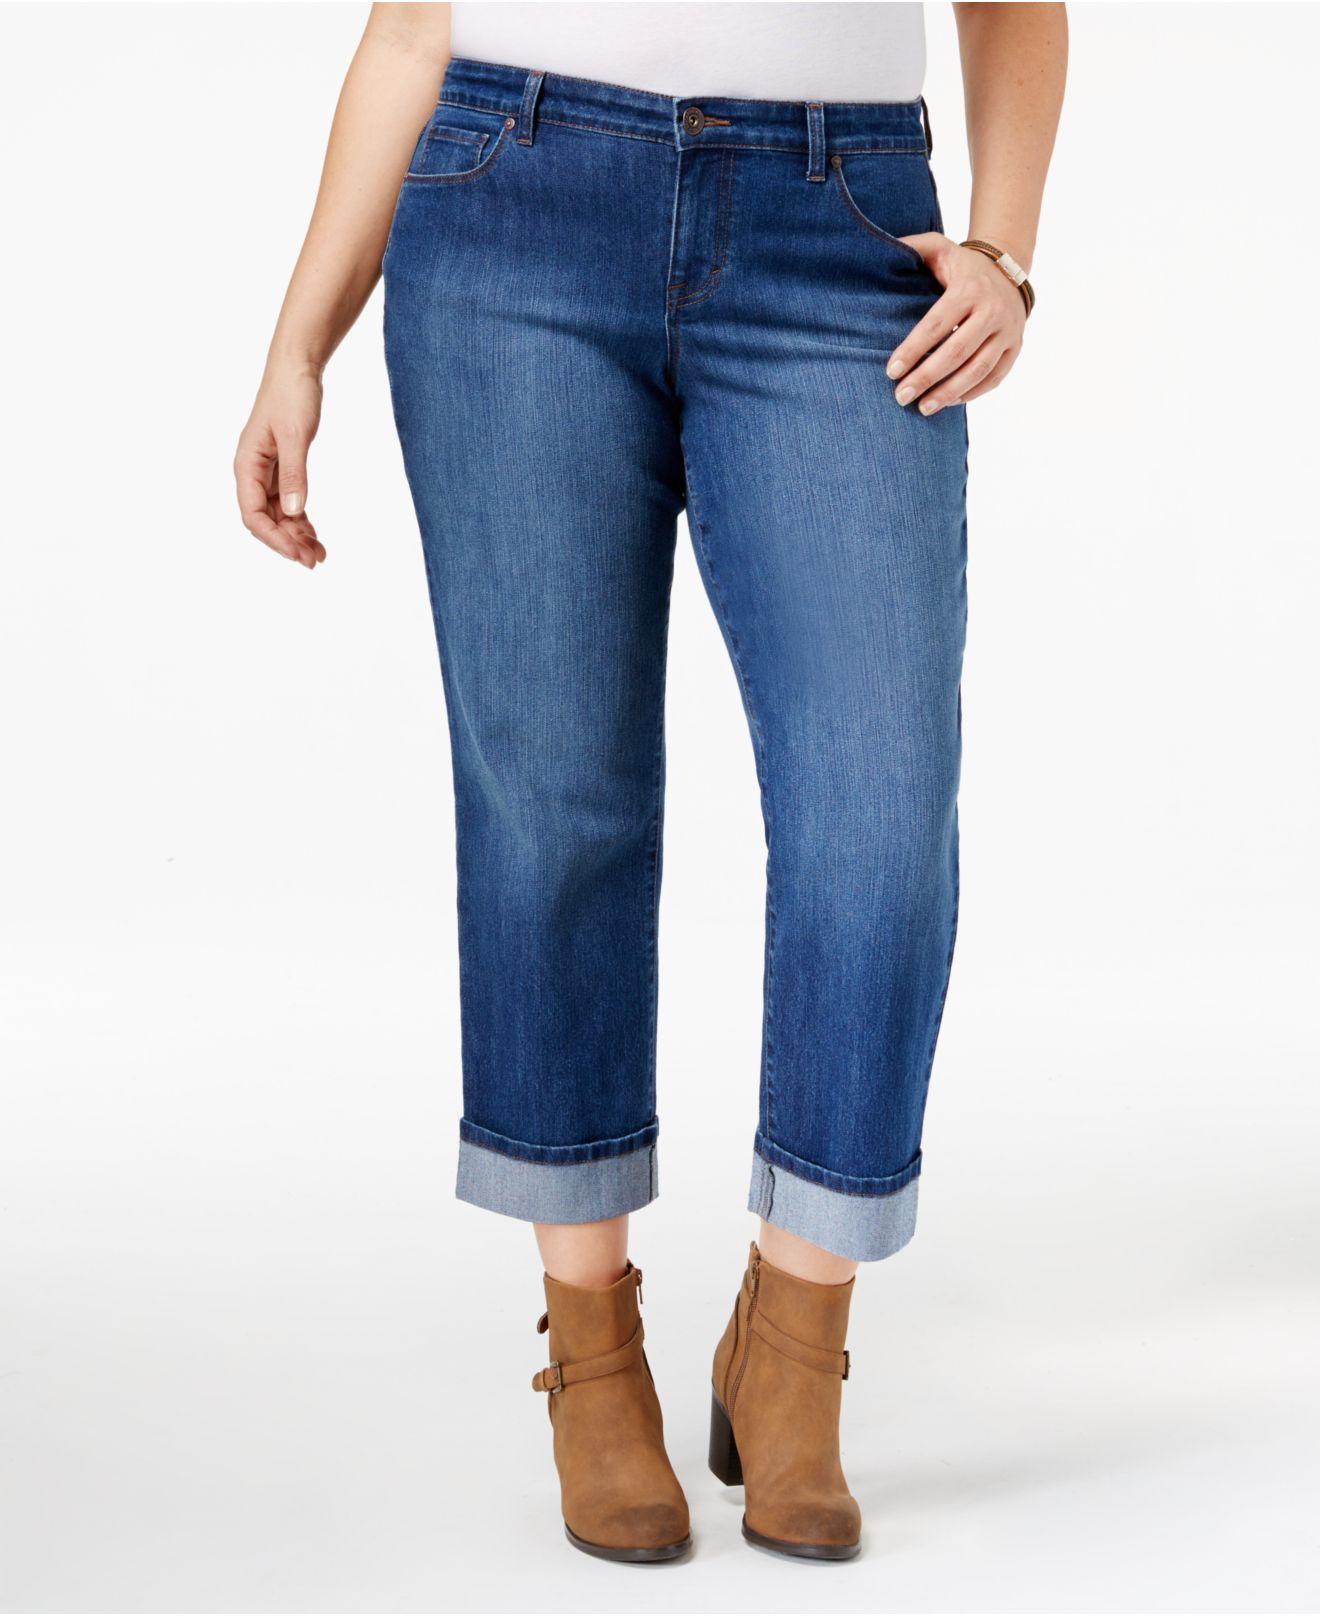 Lyst - Style & Co. Plus Size Riverside Wash Cuffed Capri Jeans in Blue